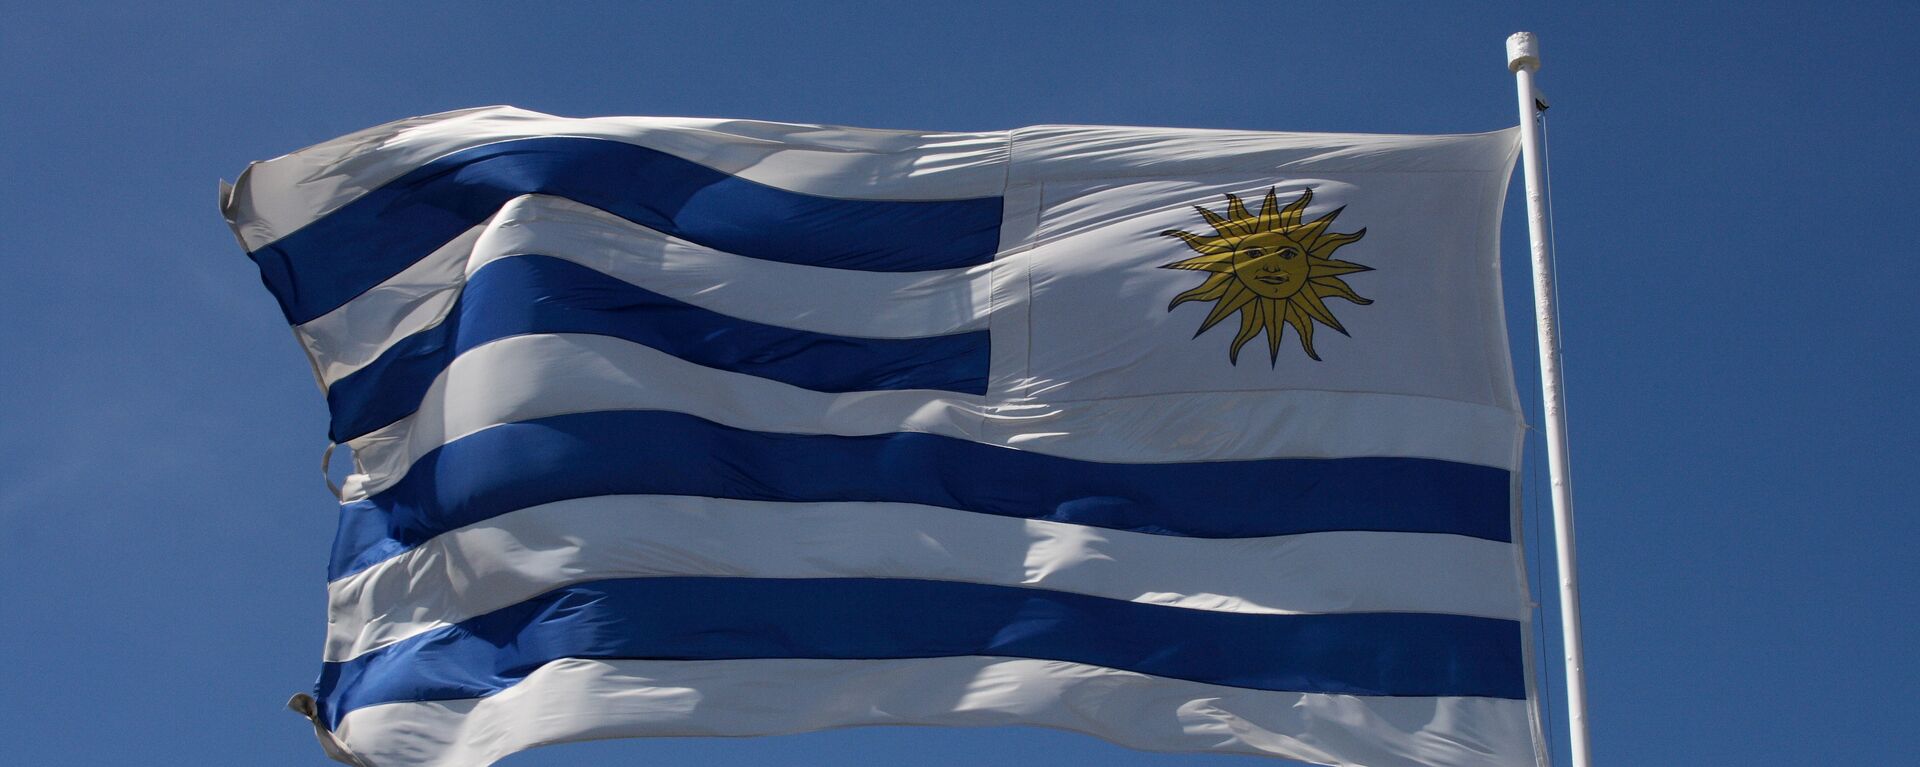 La bandera de Uruguay - Sputnik Mundo, 1920, 30.04.2021